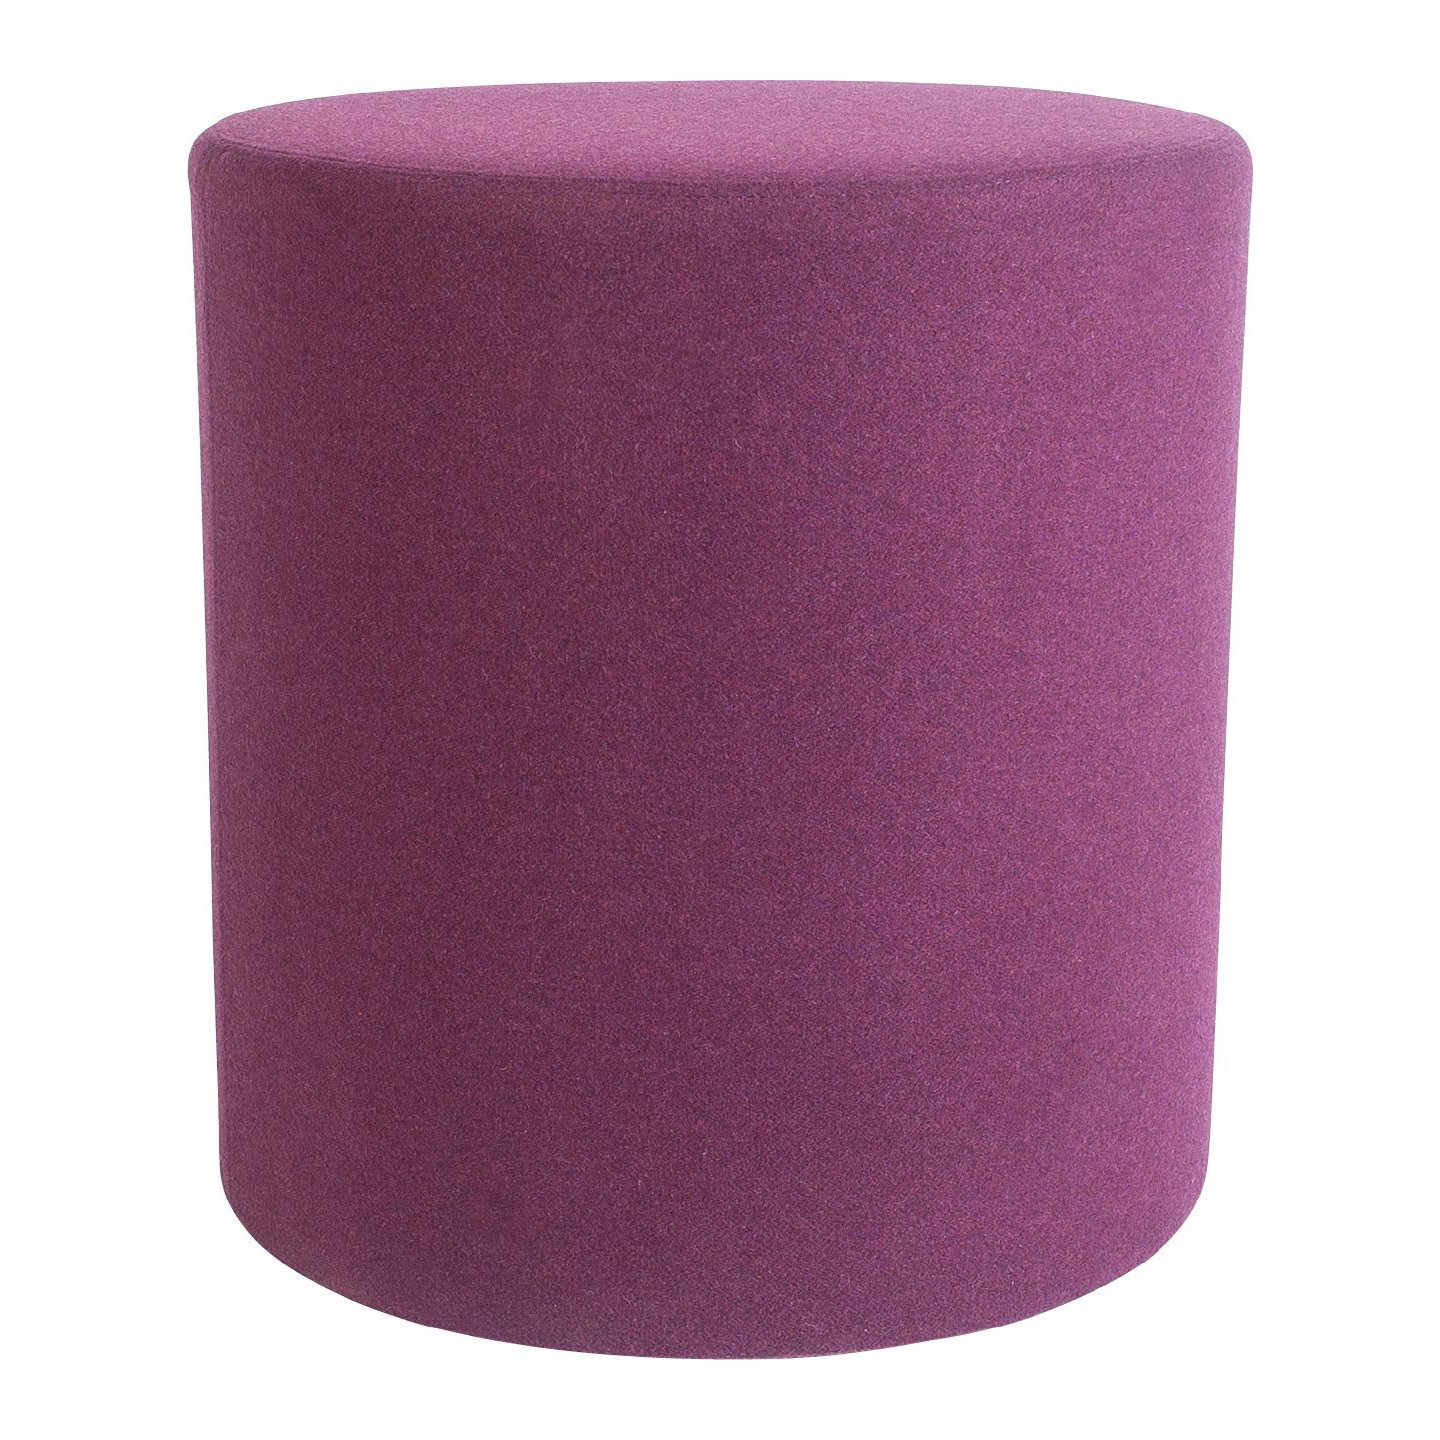 Haworth Buzzispot pouf in purple color